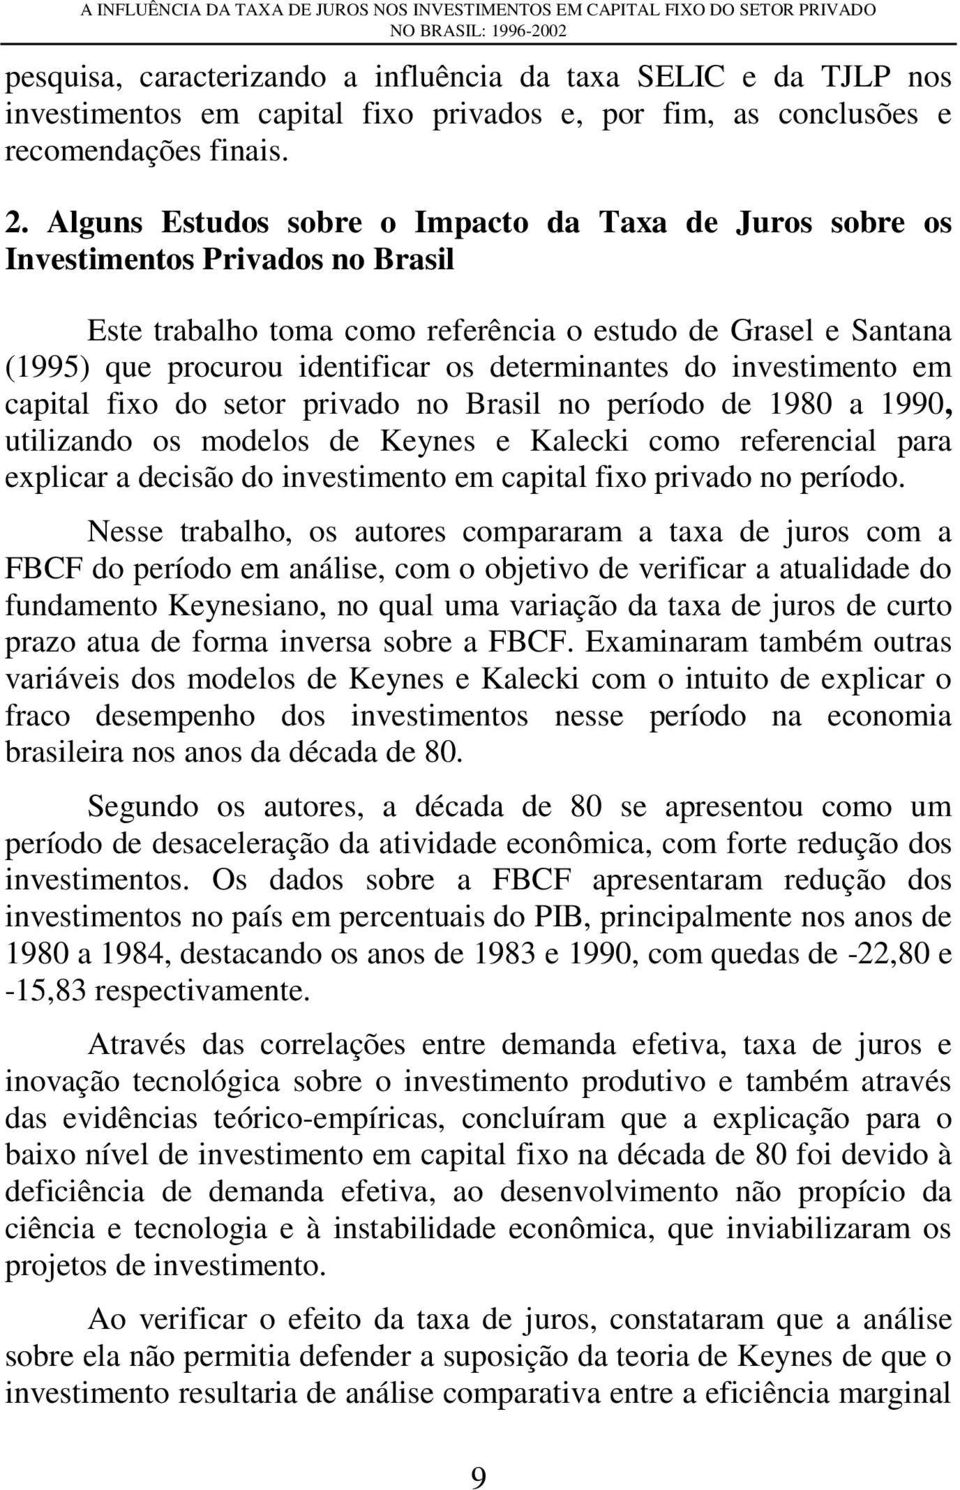 Alguns Estudos sobre o Impacto da Taxa de Juros sobre os Investimentos Privados no Brasil Este trabalho toma como referência o estudo de Grasel e Santana (1995) que procurou identificar os